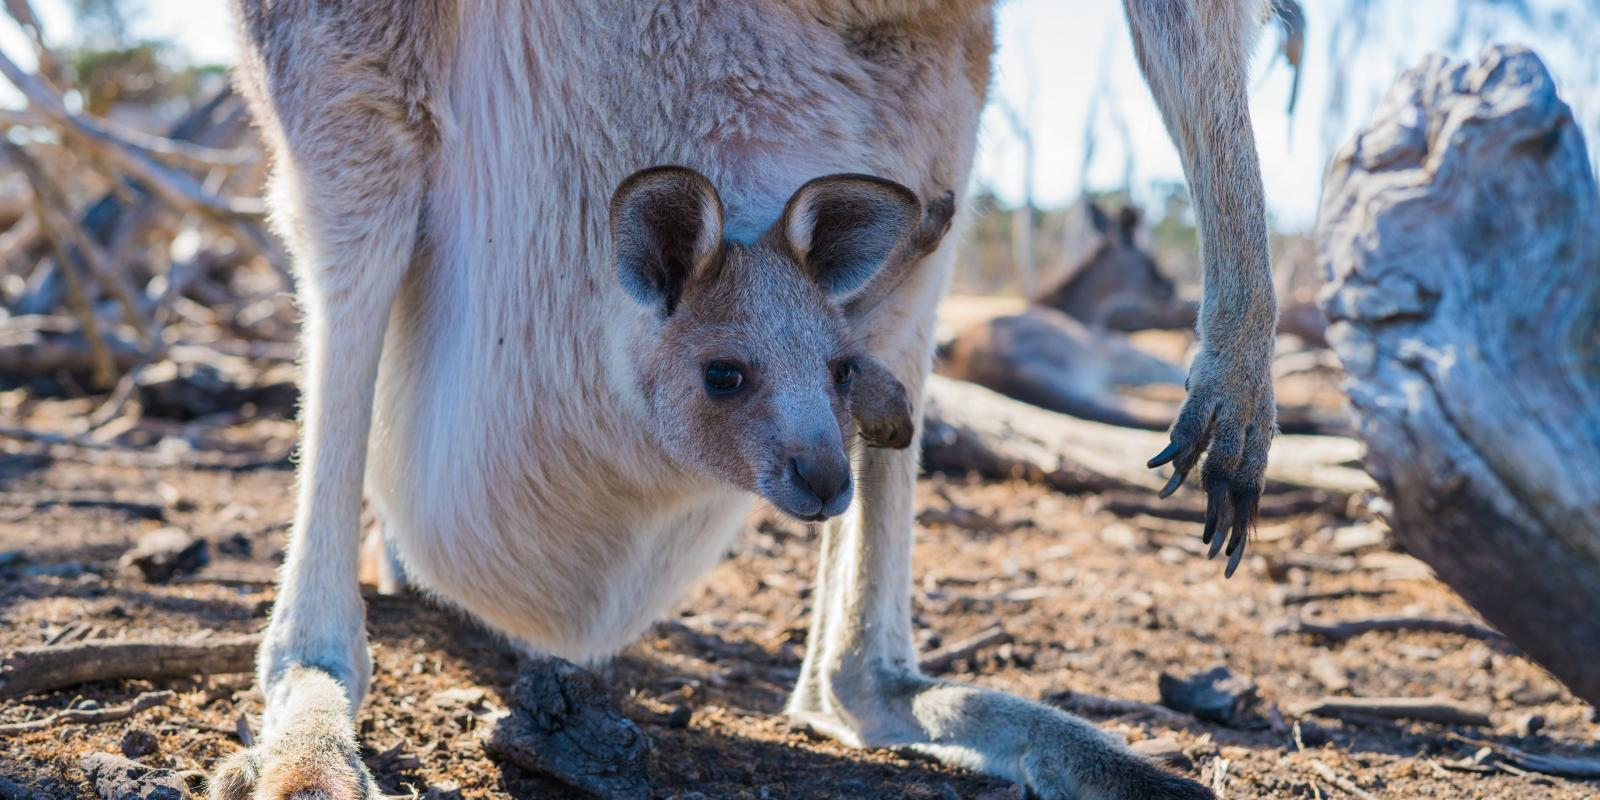 ▷ Kängurus - Die Beliebtesten Tiere In Down Under für Haben Männliche Kängurus Einen Beutel